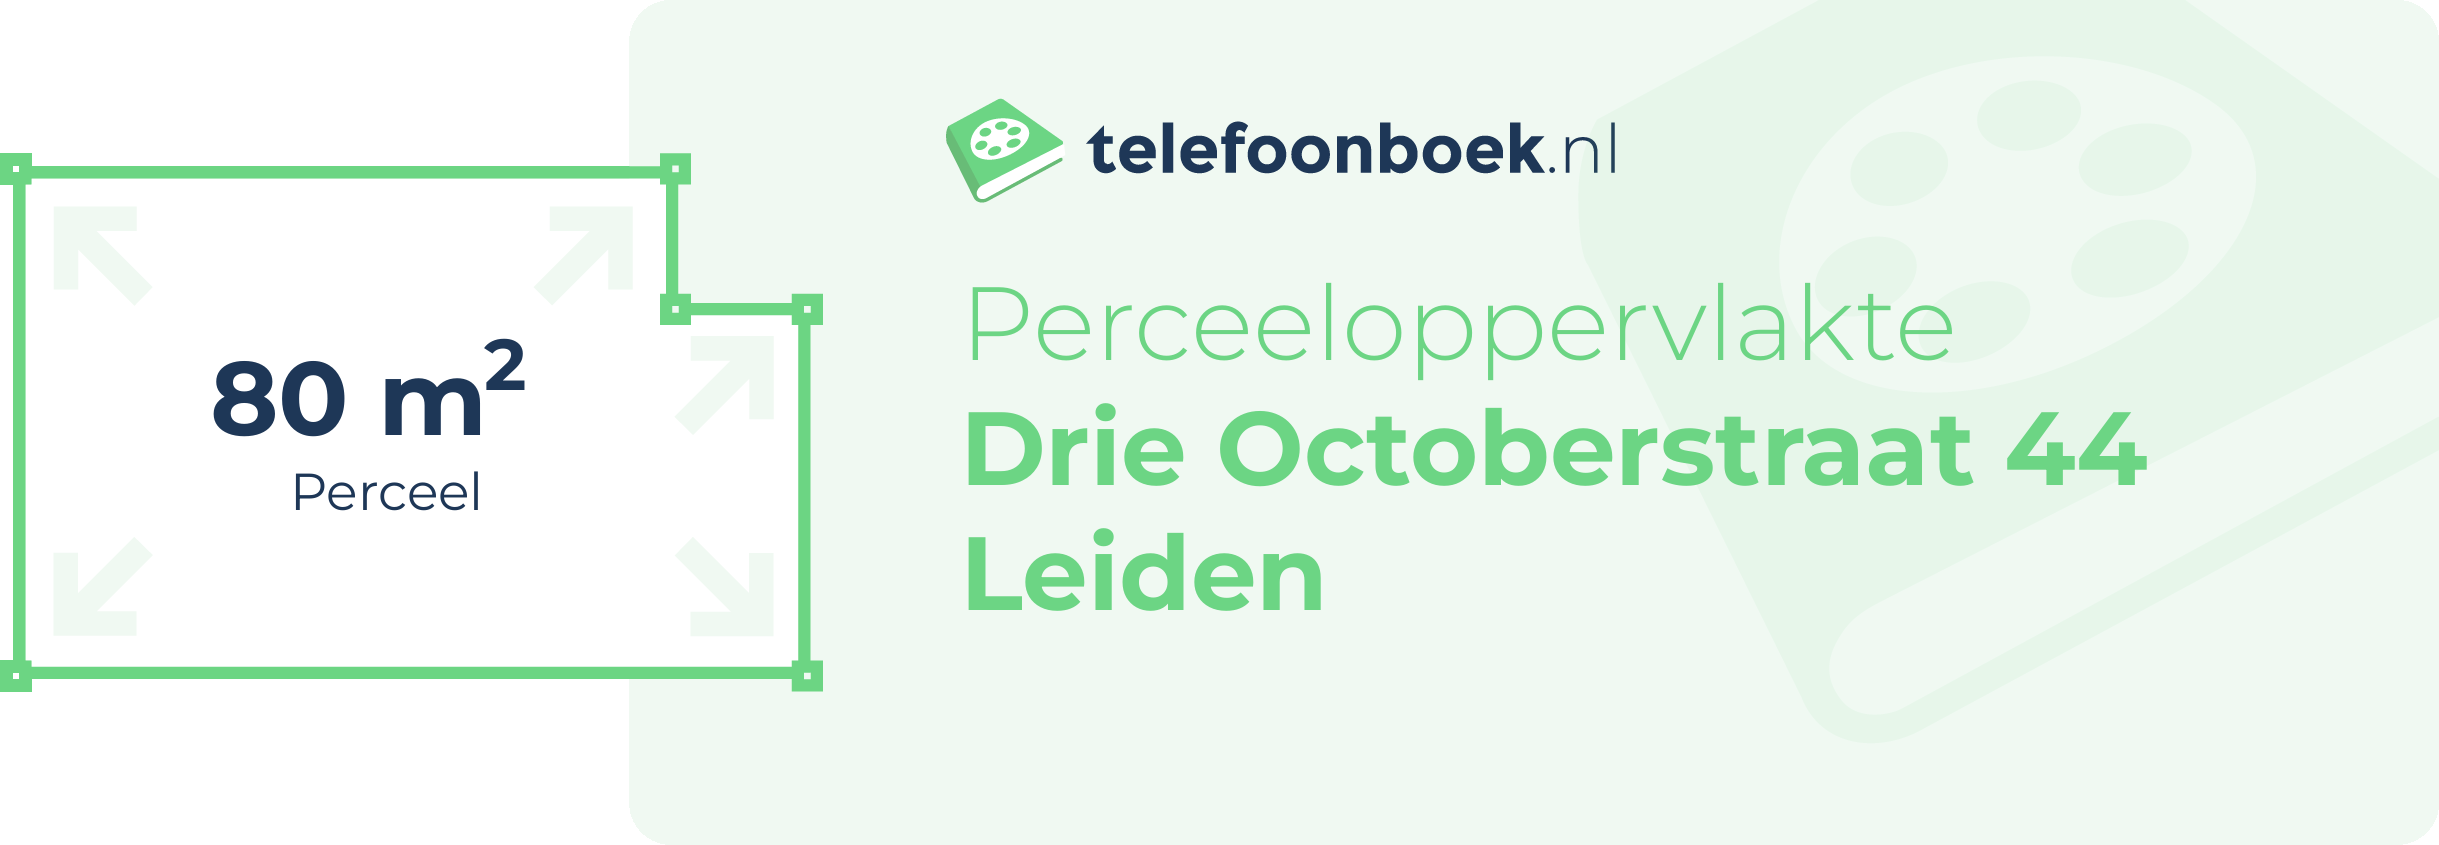 Perceeloppervlakte Drie Octoberstraat 44 Leiden